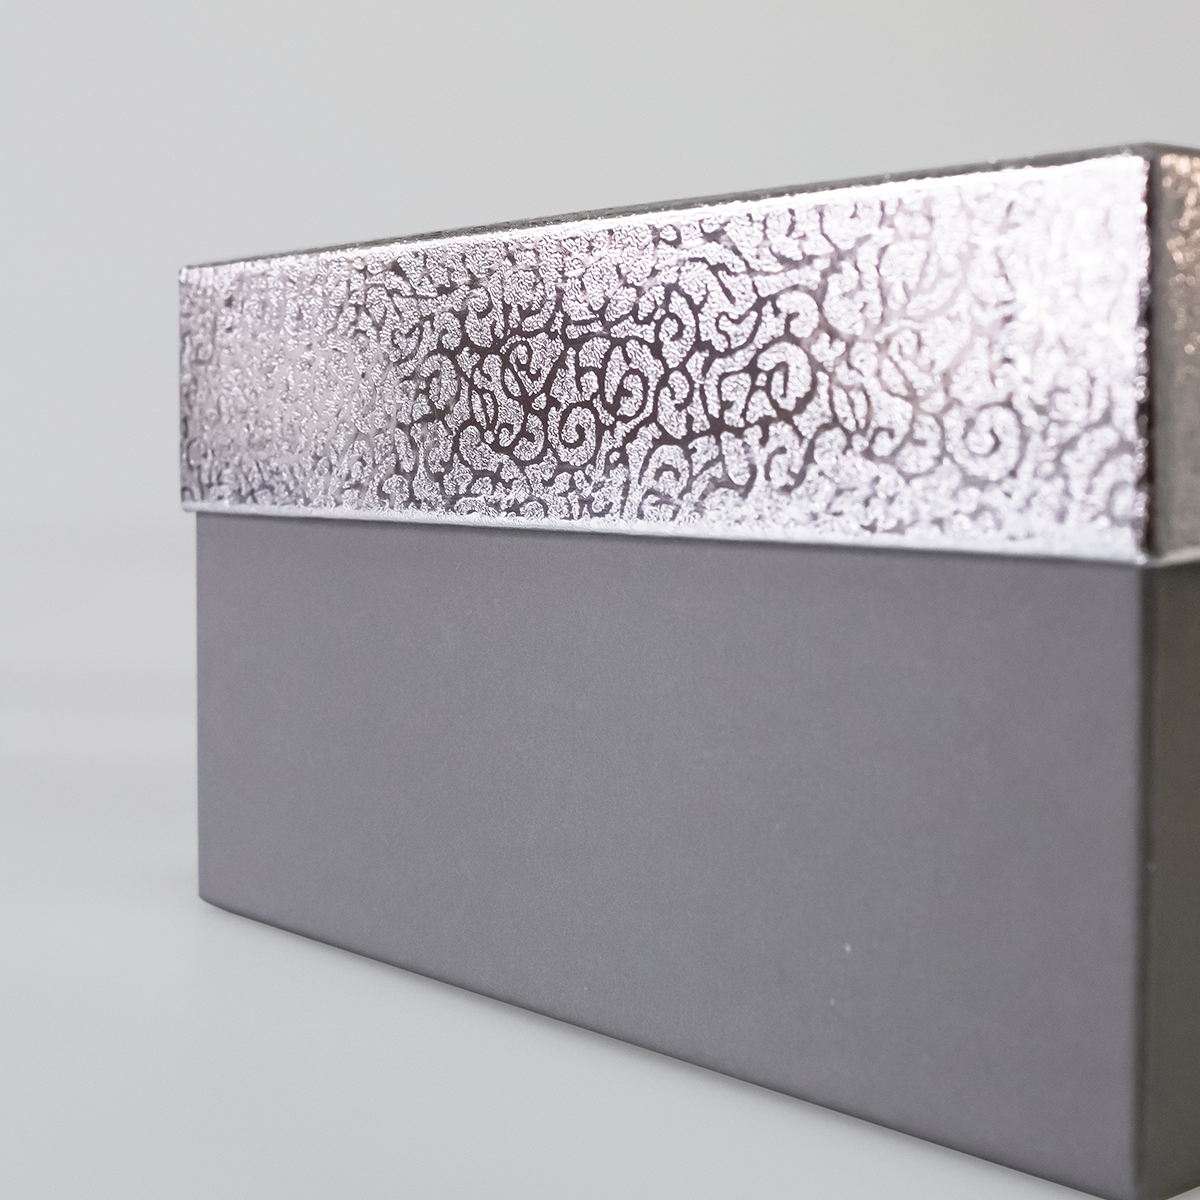 Подарочная коробка крышка-дно, 19 x 19 x 10,5 см. "Блеск", серебряный, серый